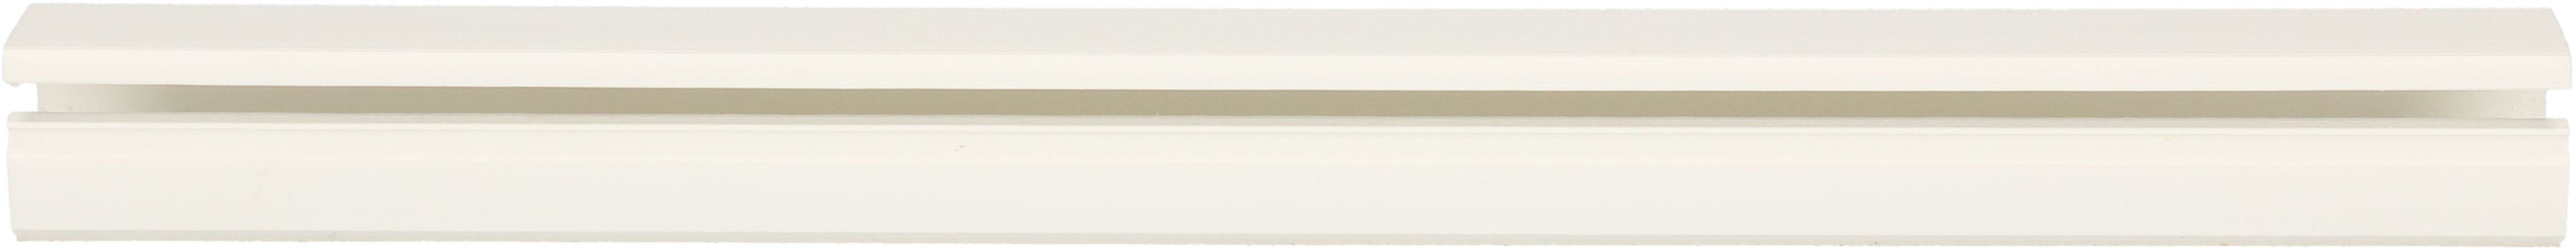 Goulotte 21x11.5mm blanc auto-adhésif 2m